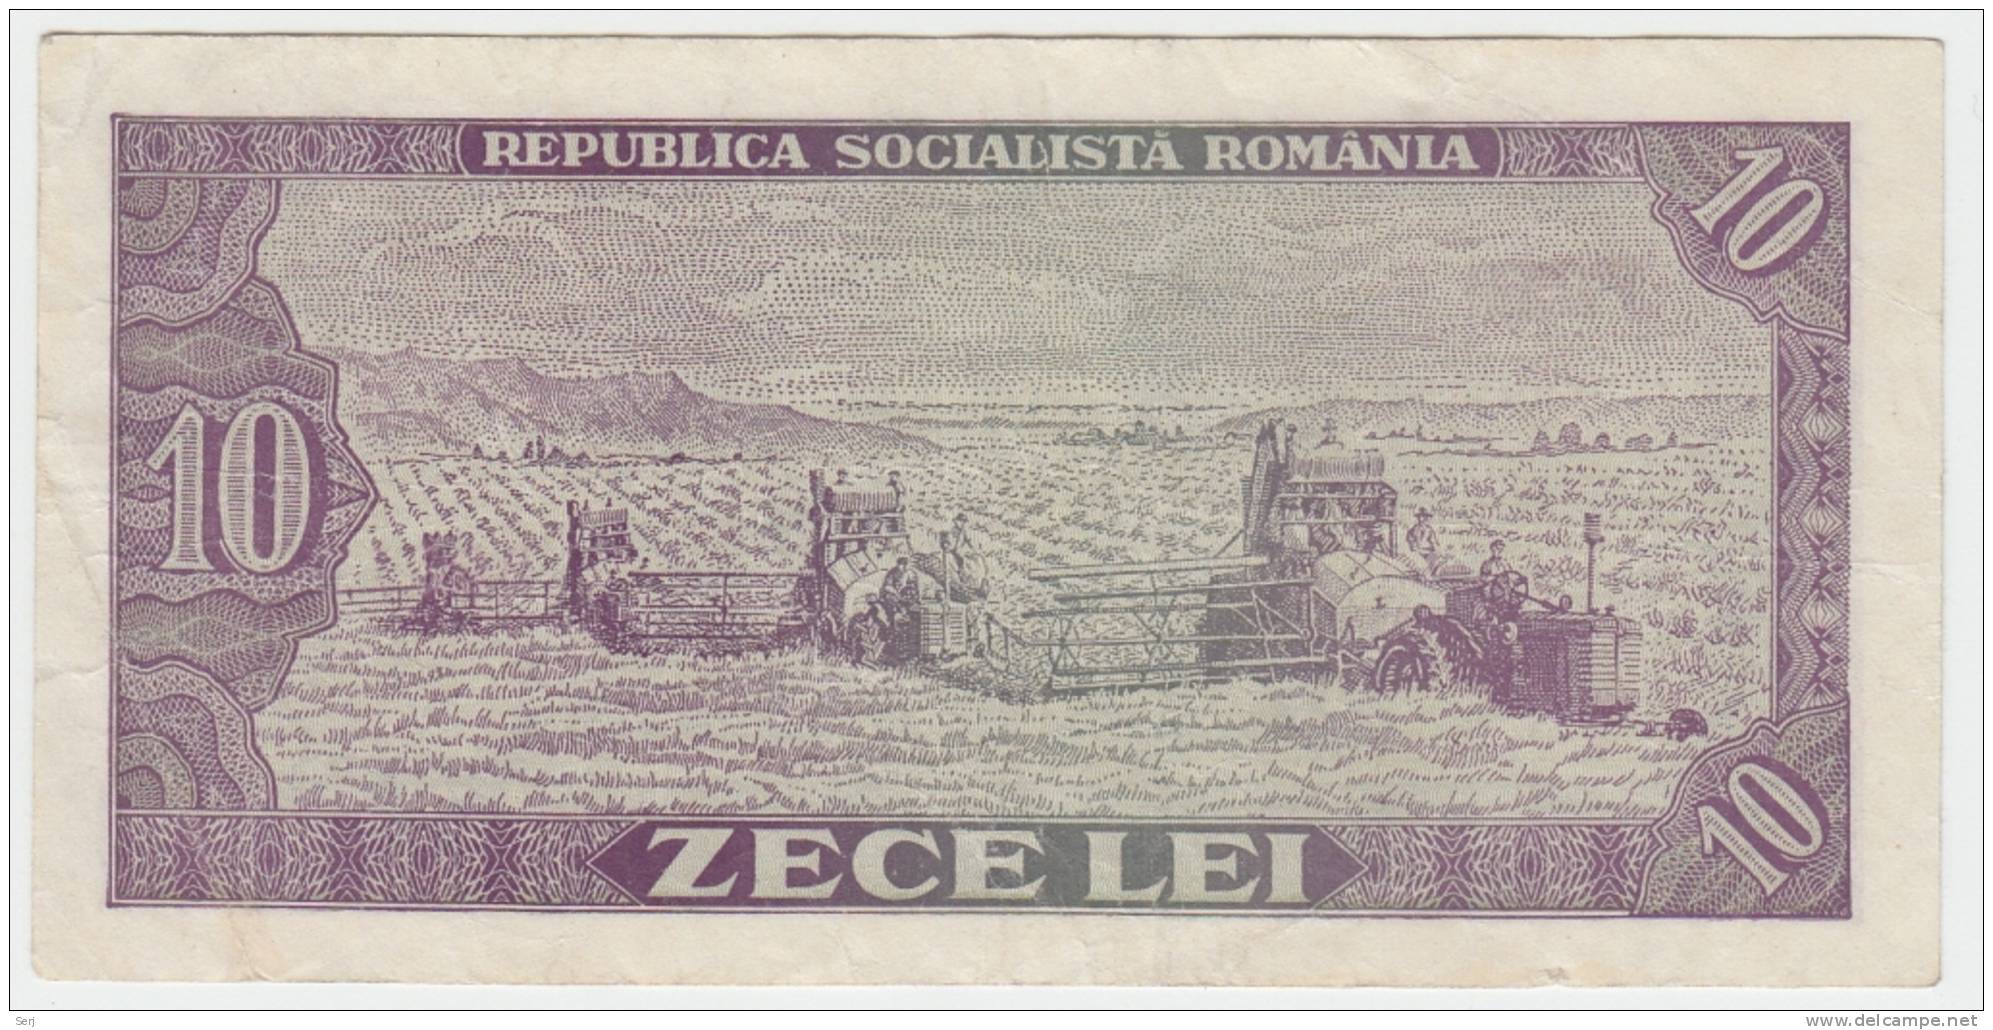 ROMANIA 10 LEI 1966 VF+ P 94 - Romania